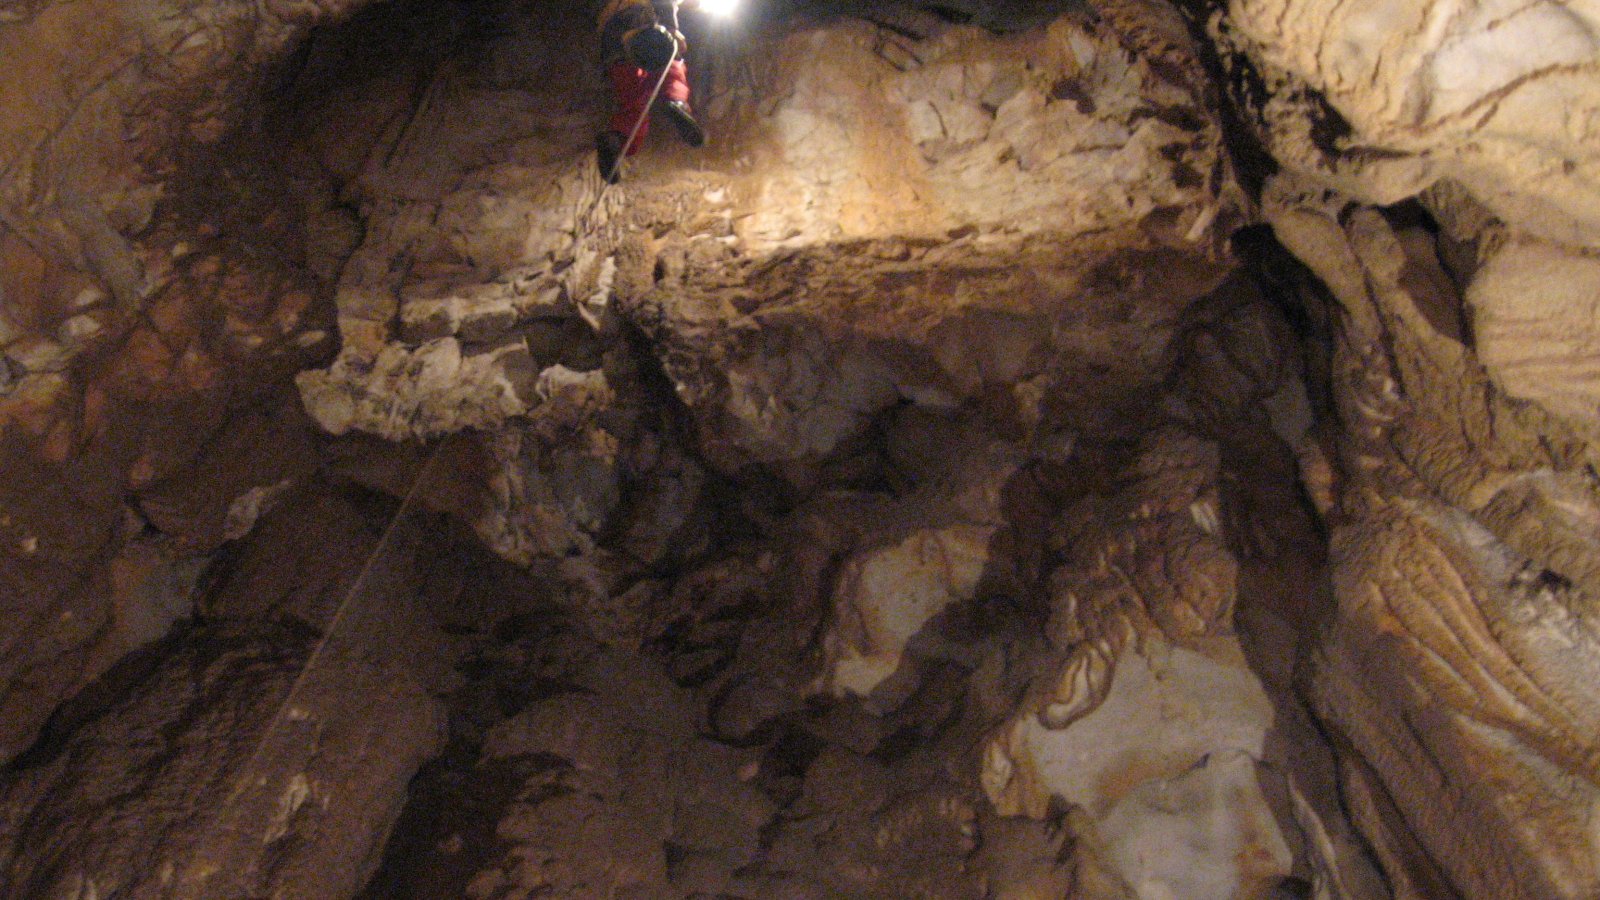 Artisan du Plein Air (canyoning, speleo, escalade) - Lionel RIAS